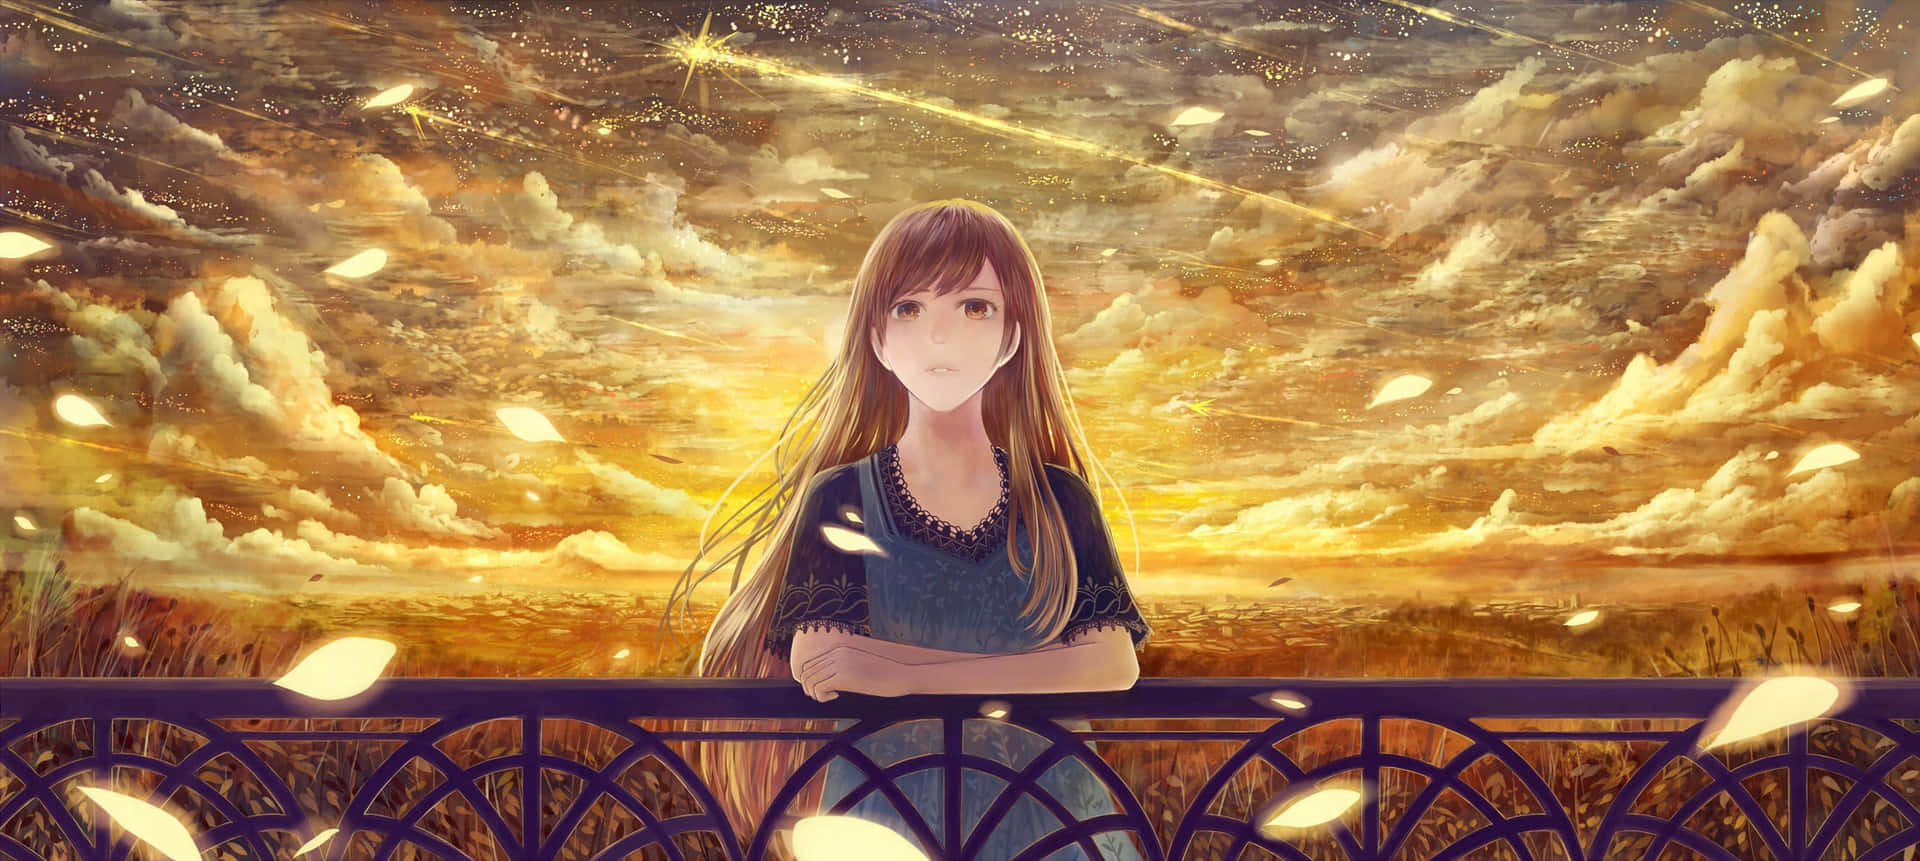 Et følelsesmæssigt portræt af en smuk anime pige der tyder tilsyneladende at sørge for noget. Wallpaper